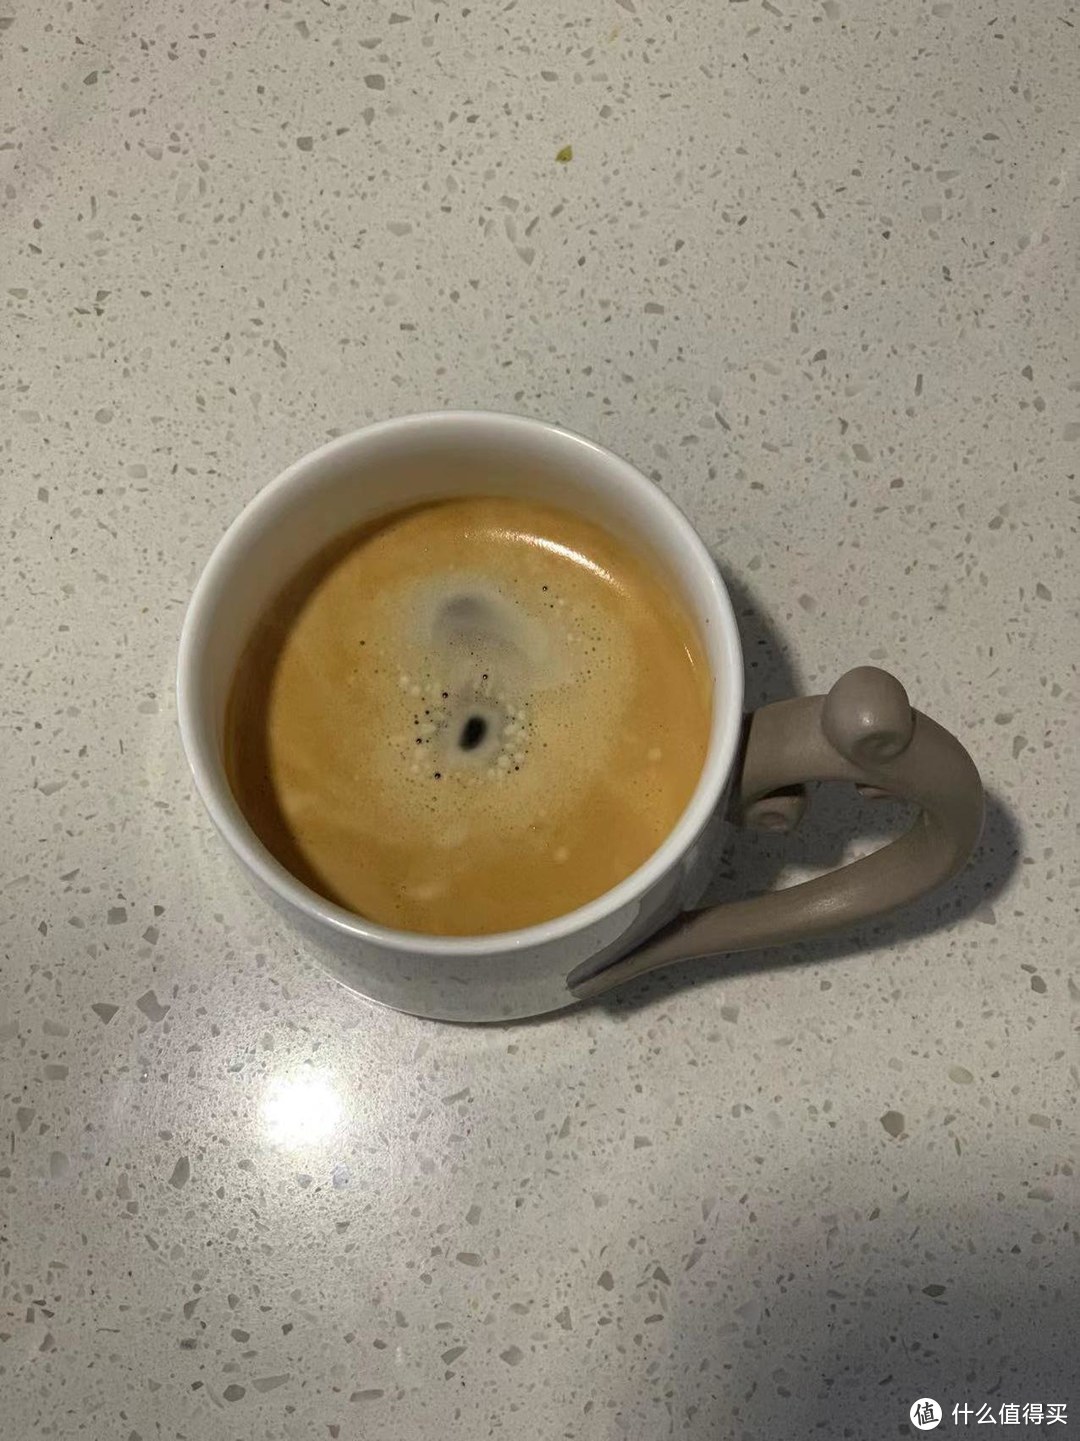 大杯咖啡 Lungo